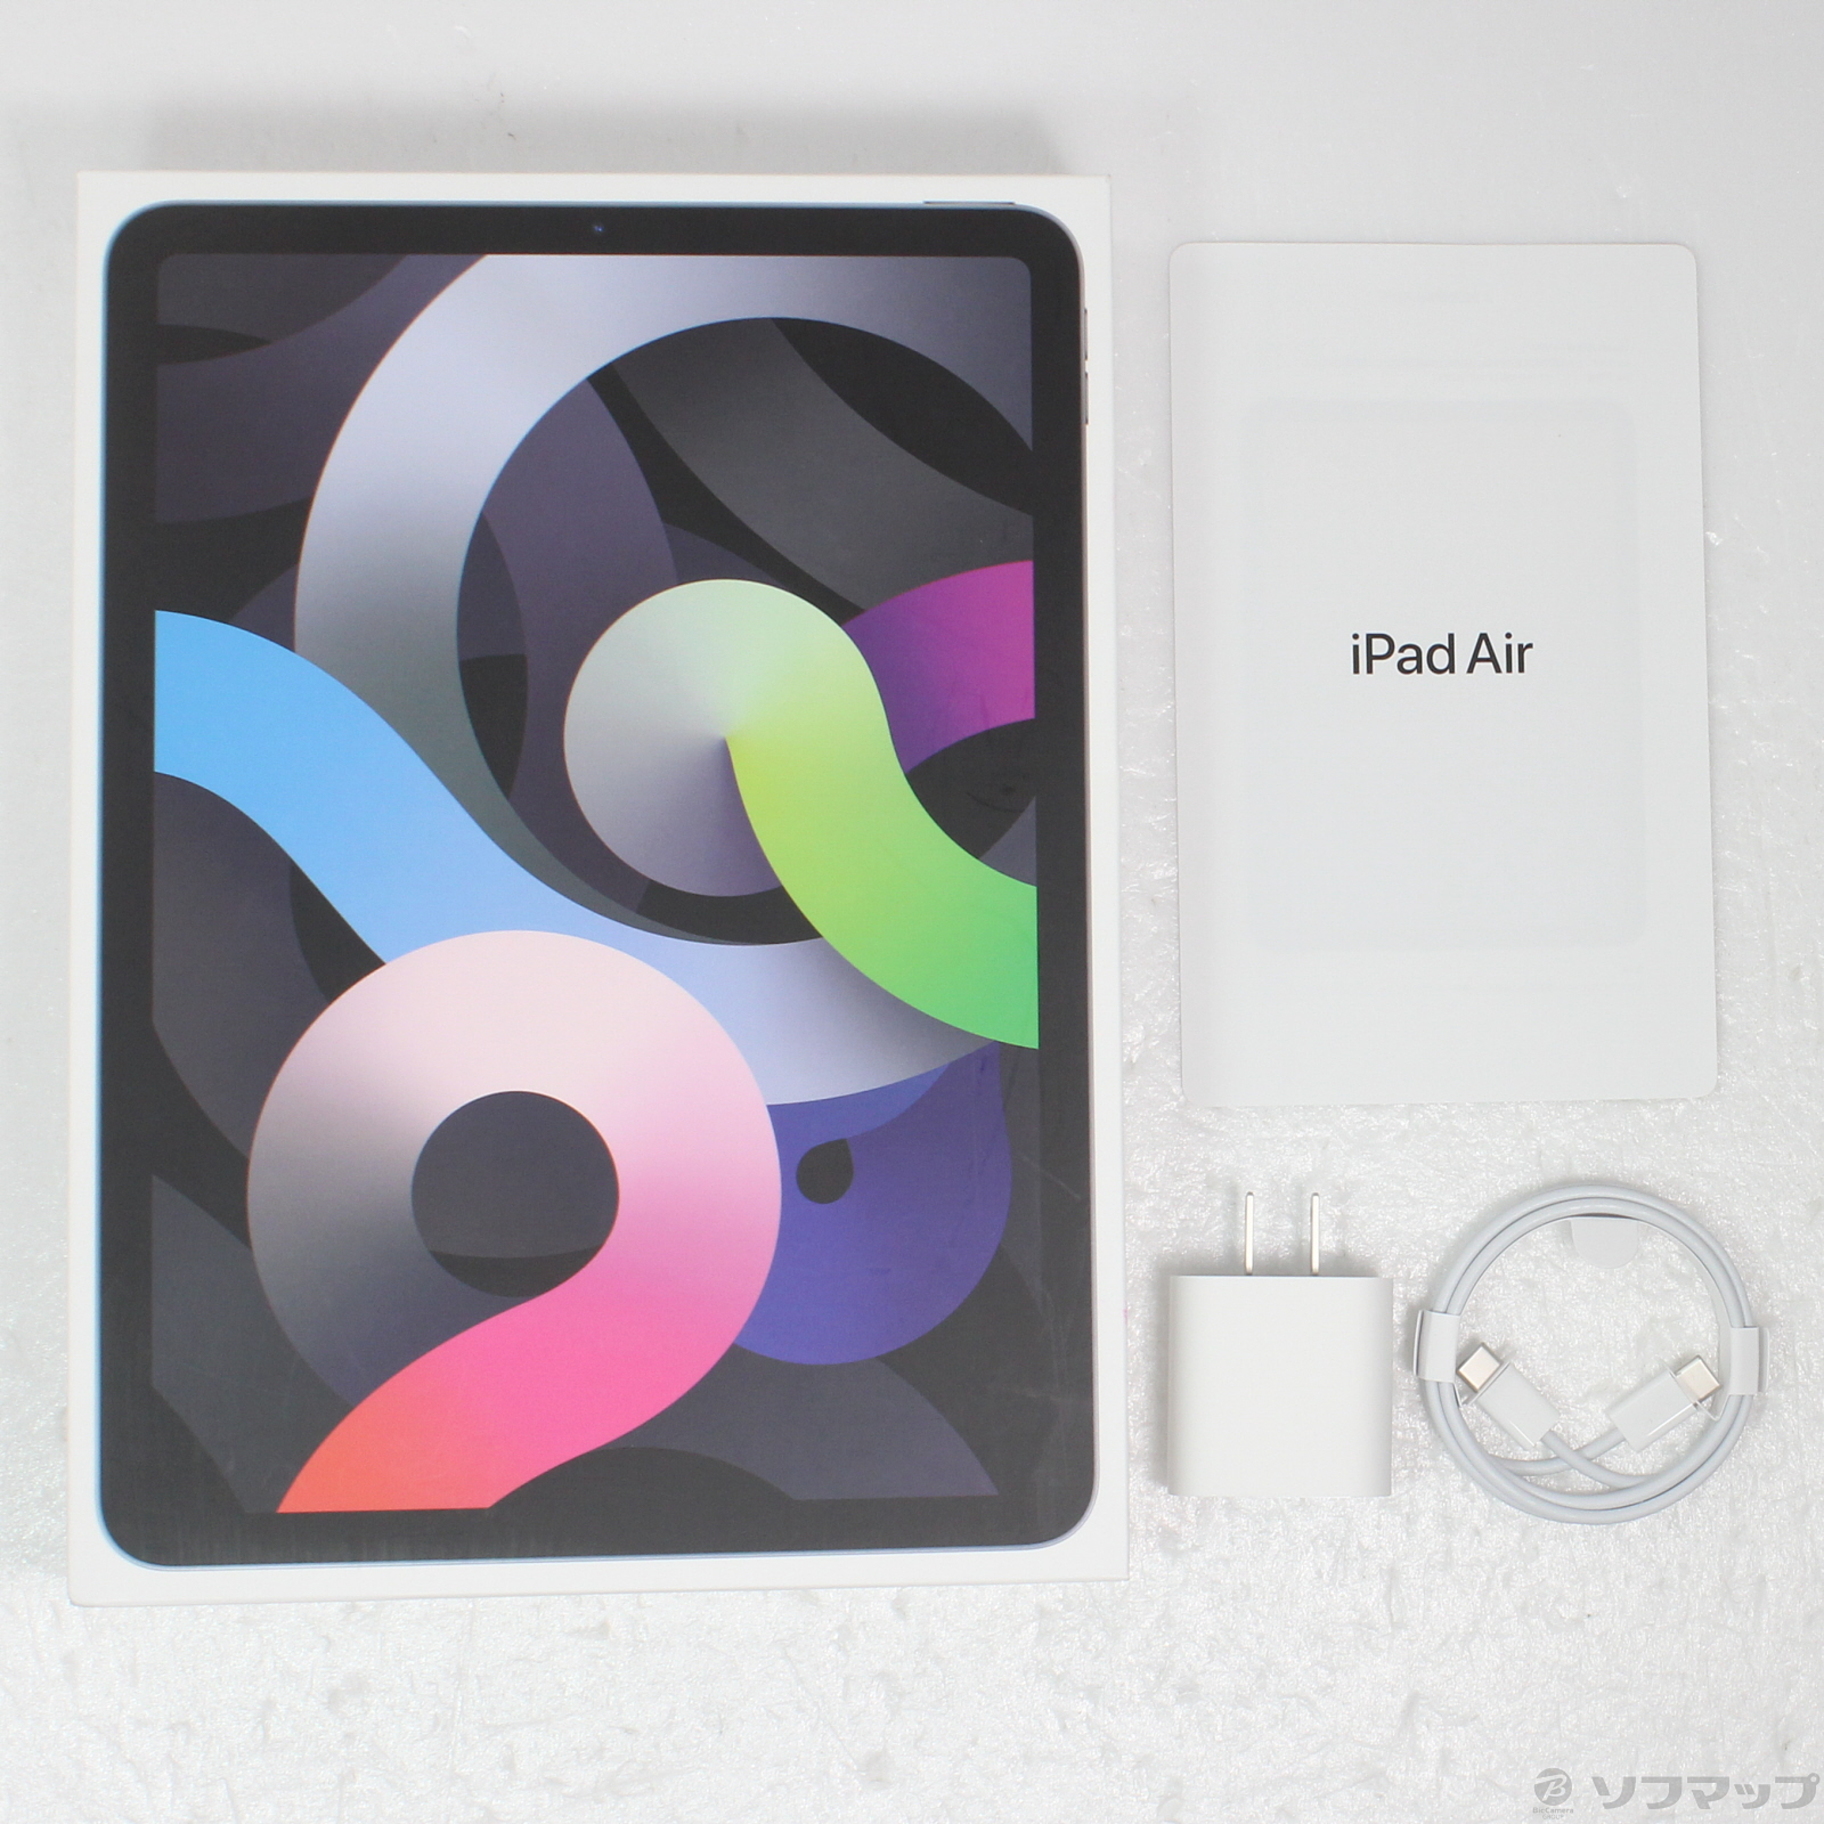 【セールHOT】アップル ipad air 4 64gb 第4世代 スペースグレイ 新品 タブレット